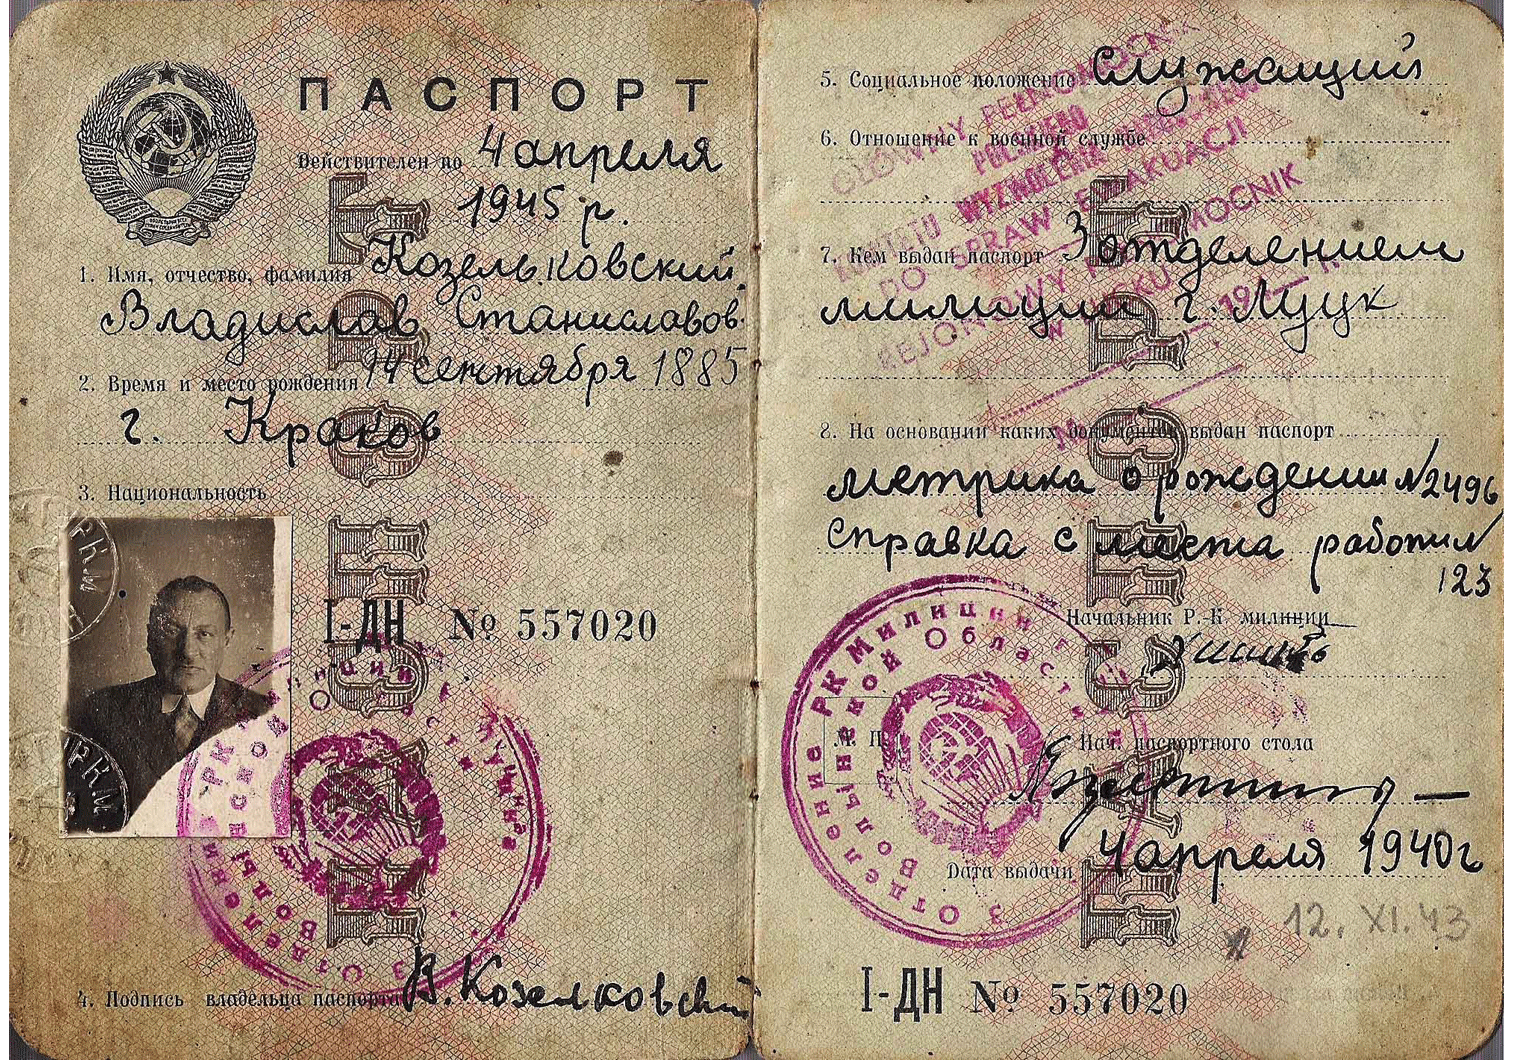 WW2 Soviet passports